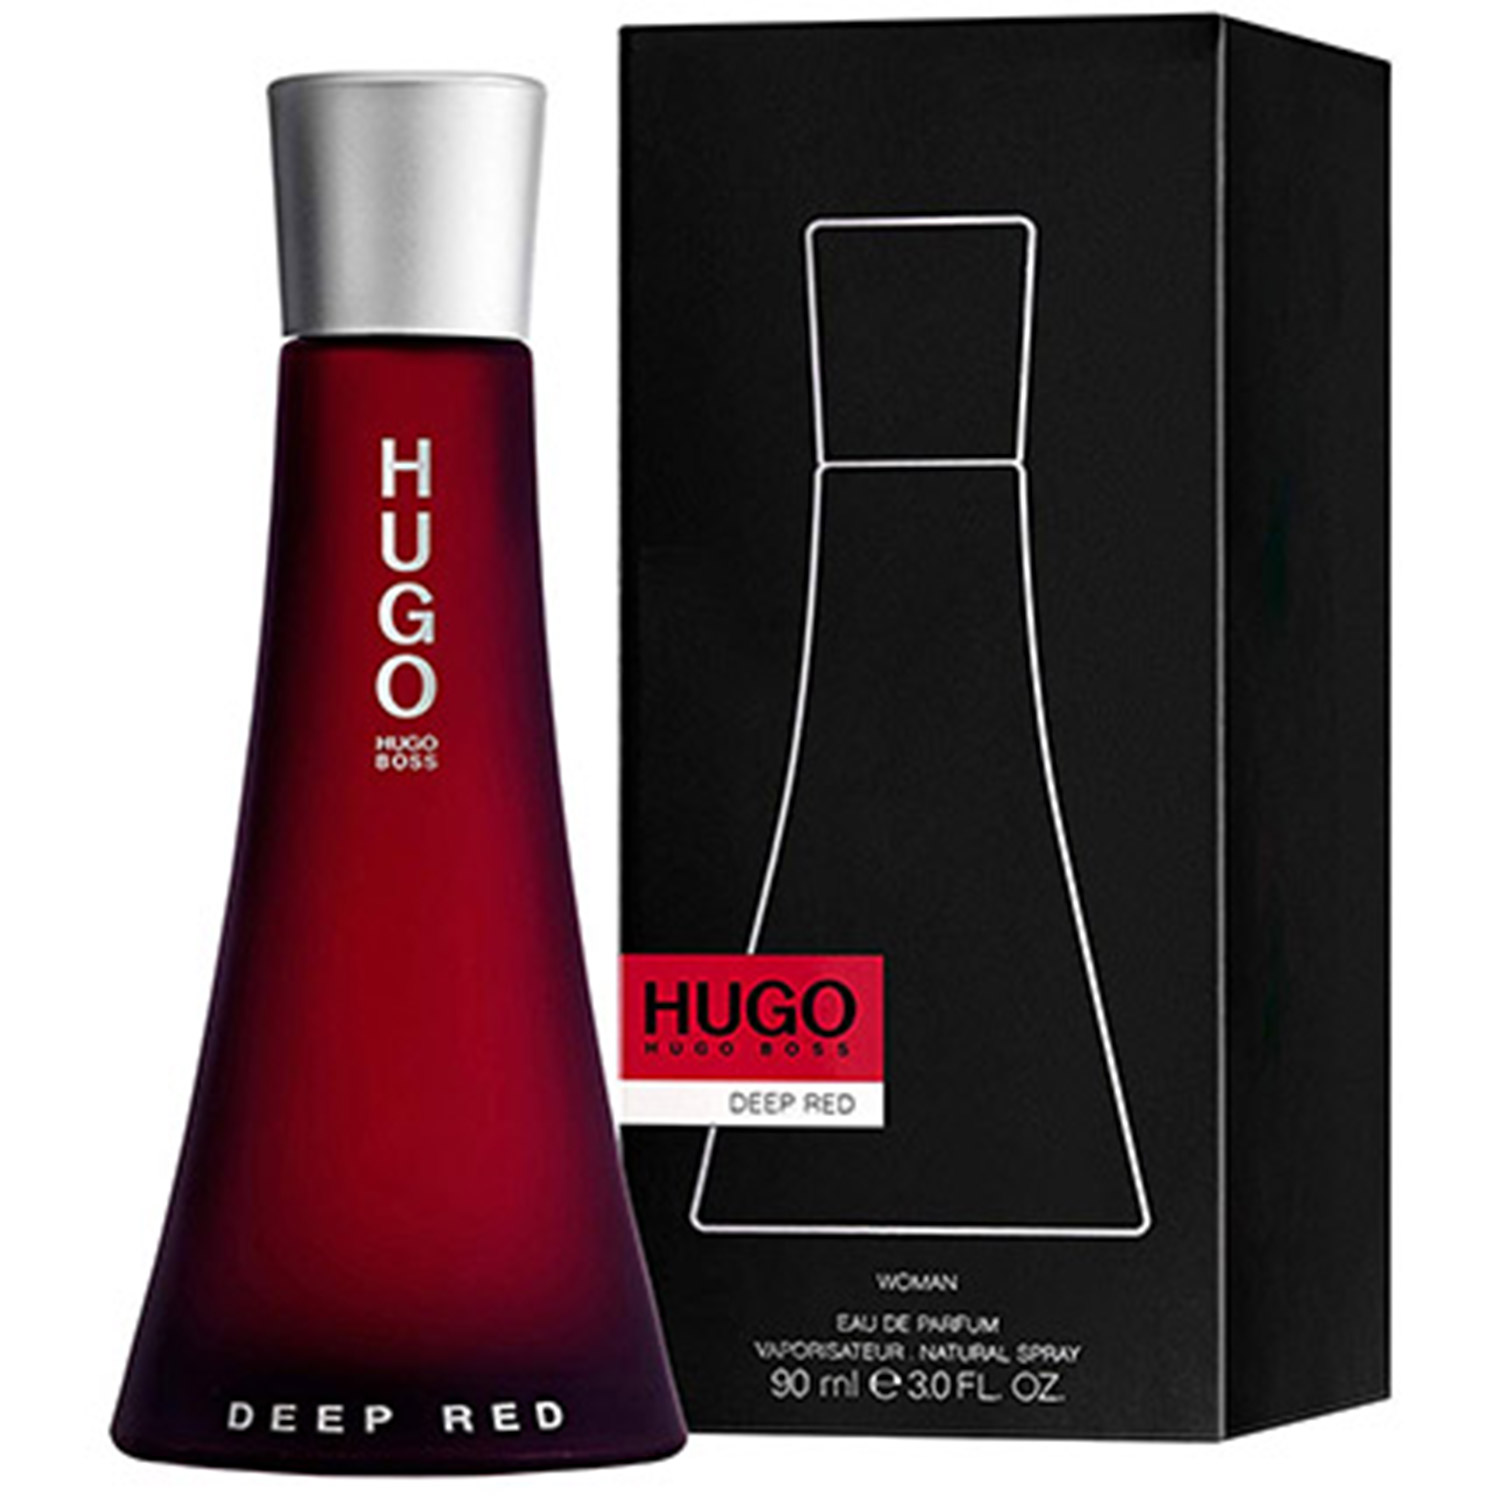 Hugo boss red